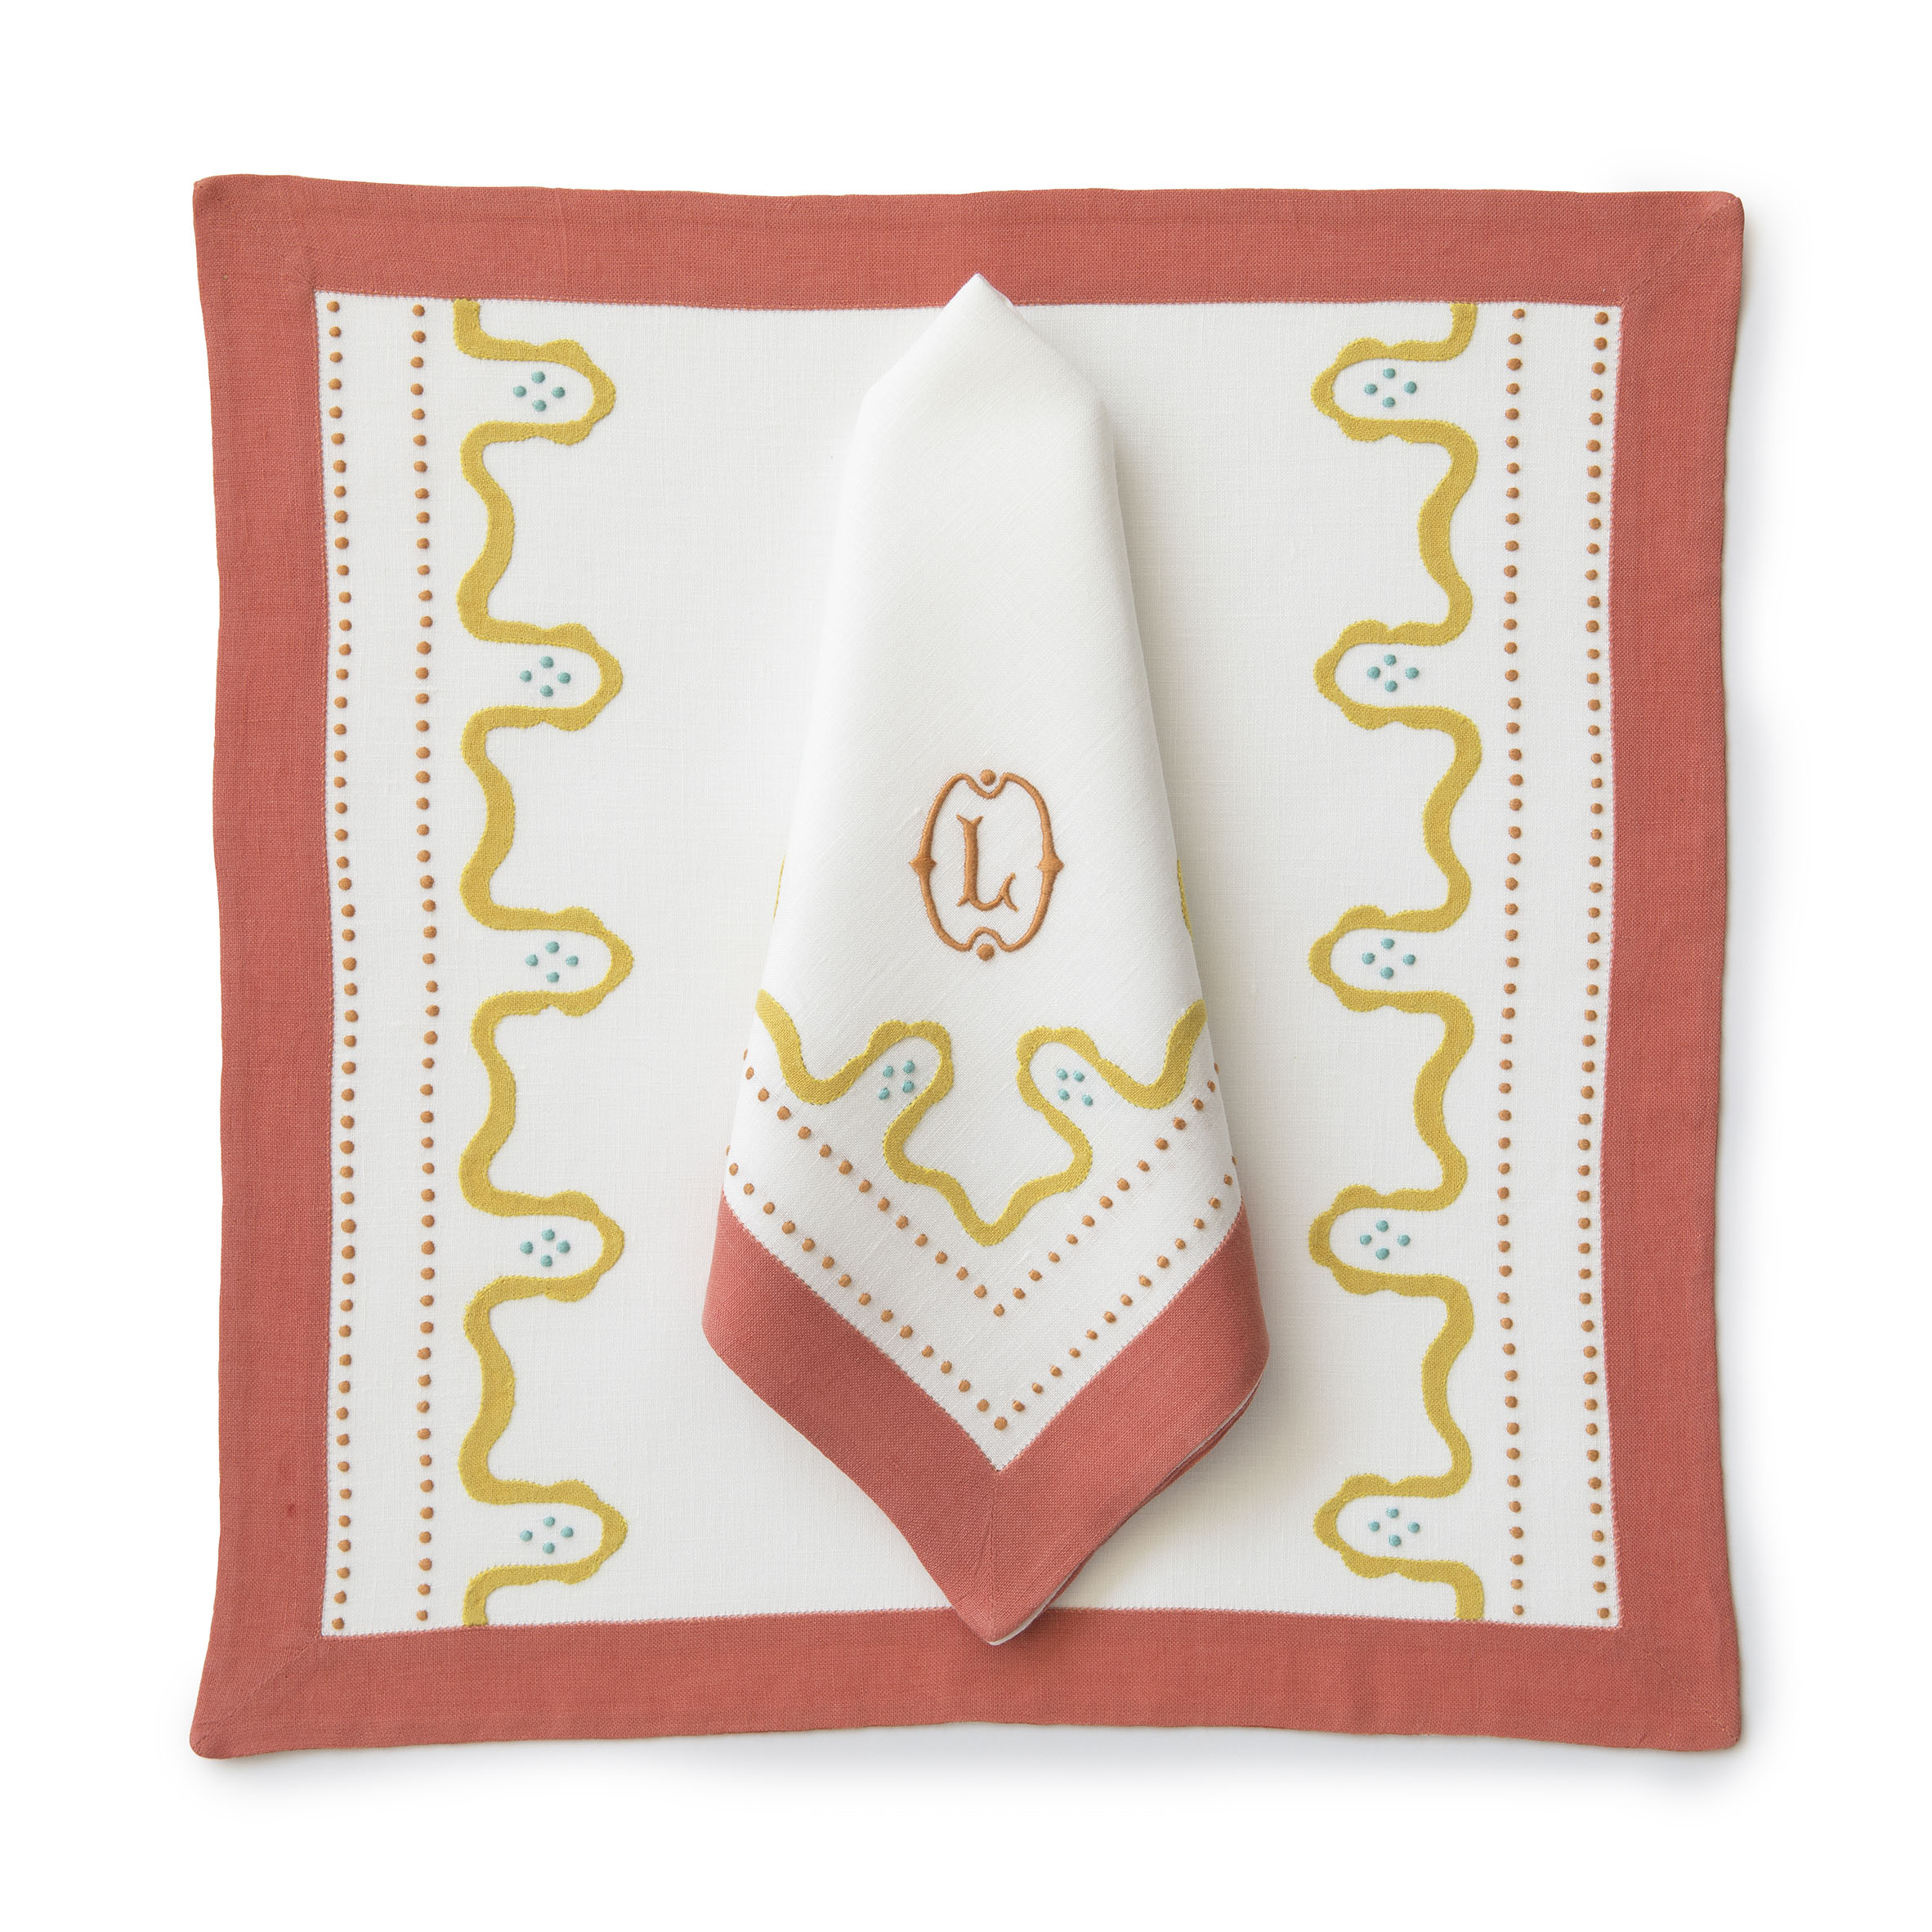 Florence Monogrammed Cloth Dinner Napkins - Set of 4 napkins